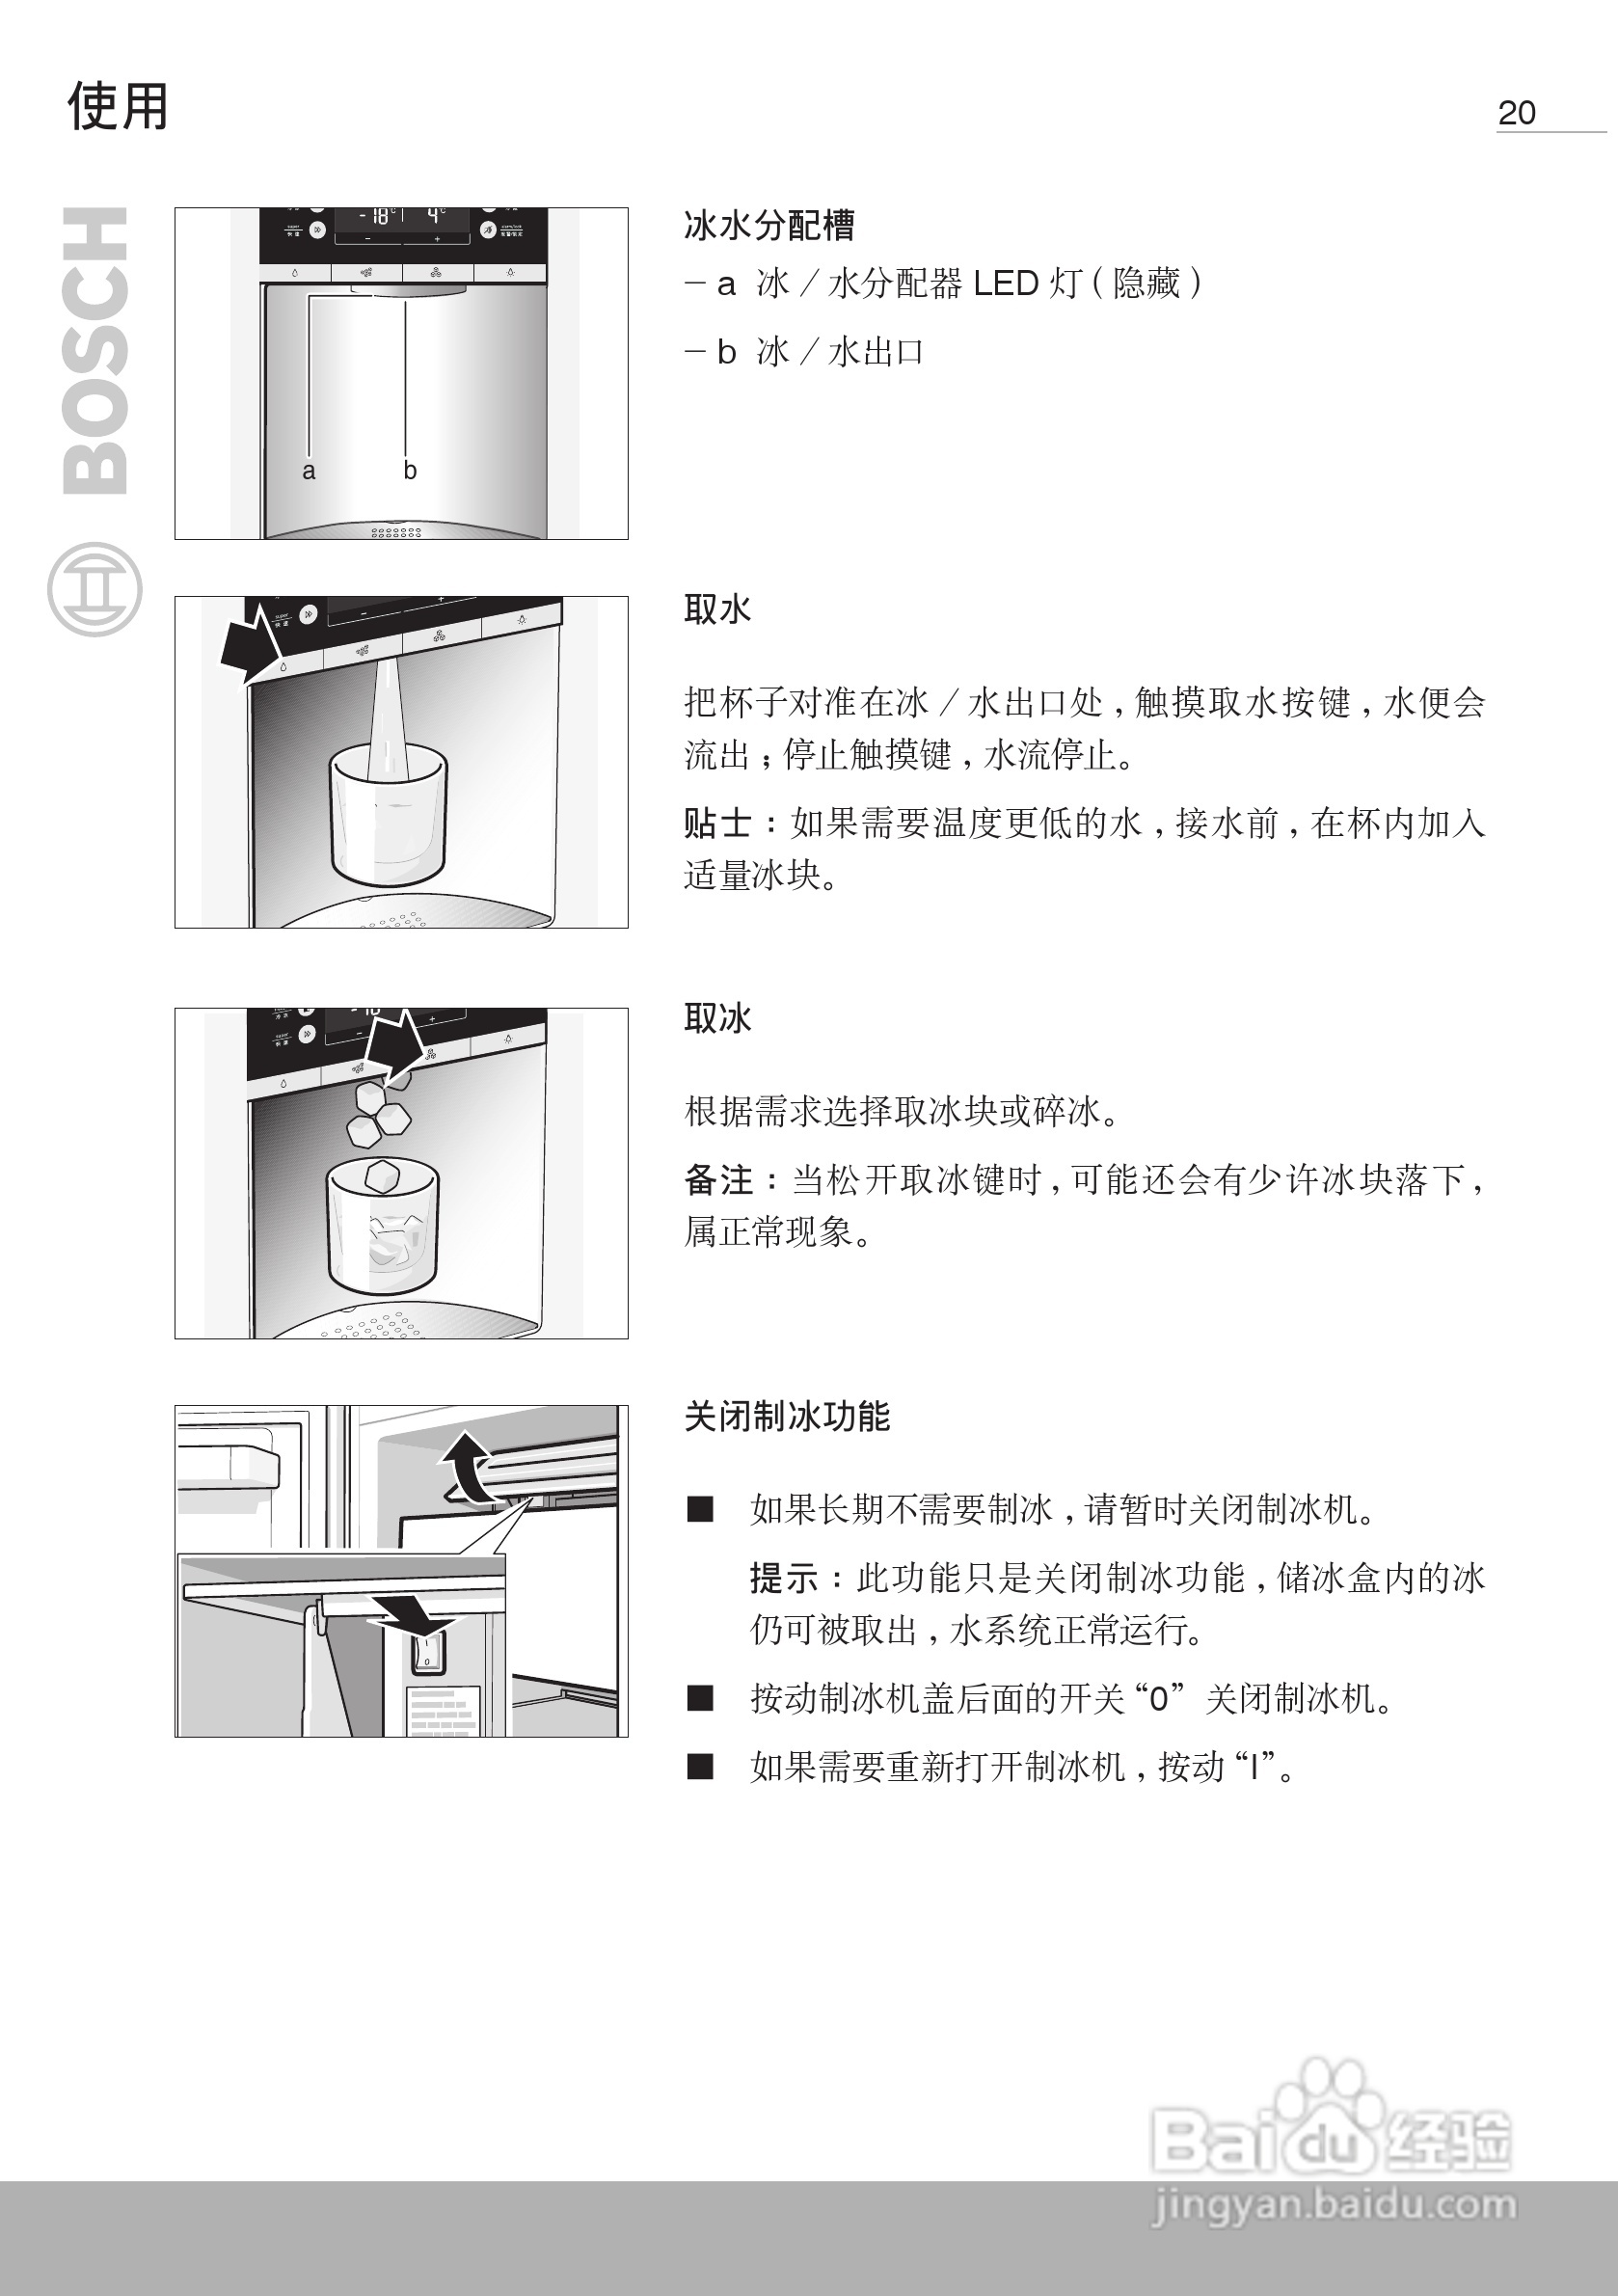 博世kad63v00ti双开门家用电冰箱使用说明书:[2]